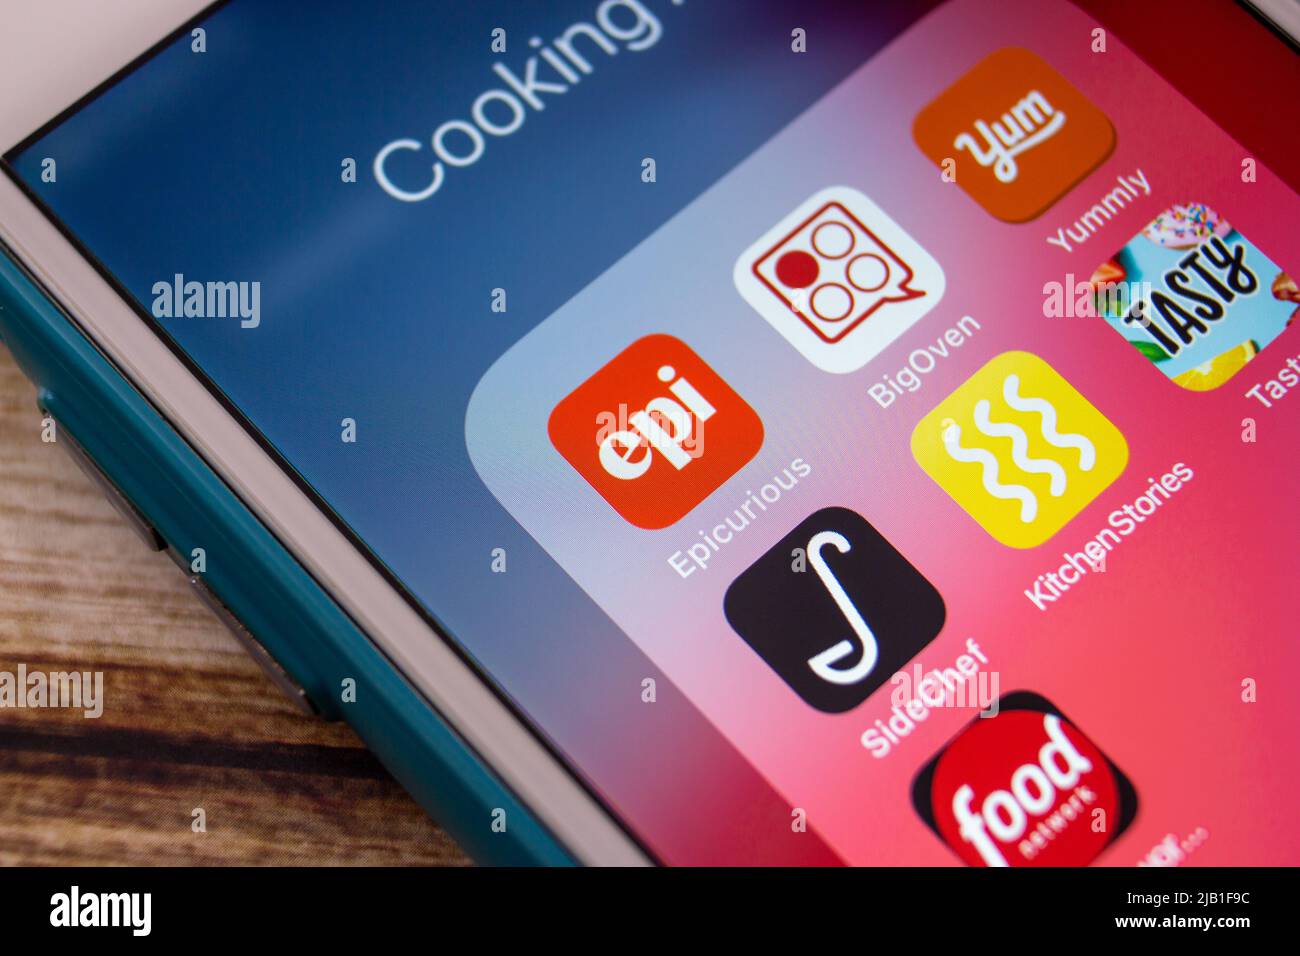 Epicurious, la marque numérique se concentre sur des sujets liés à l'alimentation et à la cuisine, avec BigOven, Yumly, SideChef, Kitchen Stories, Tasty App & Food Network sur iPhone Banque D'Images